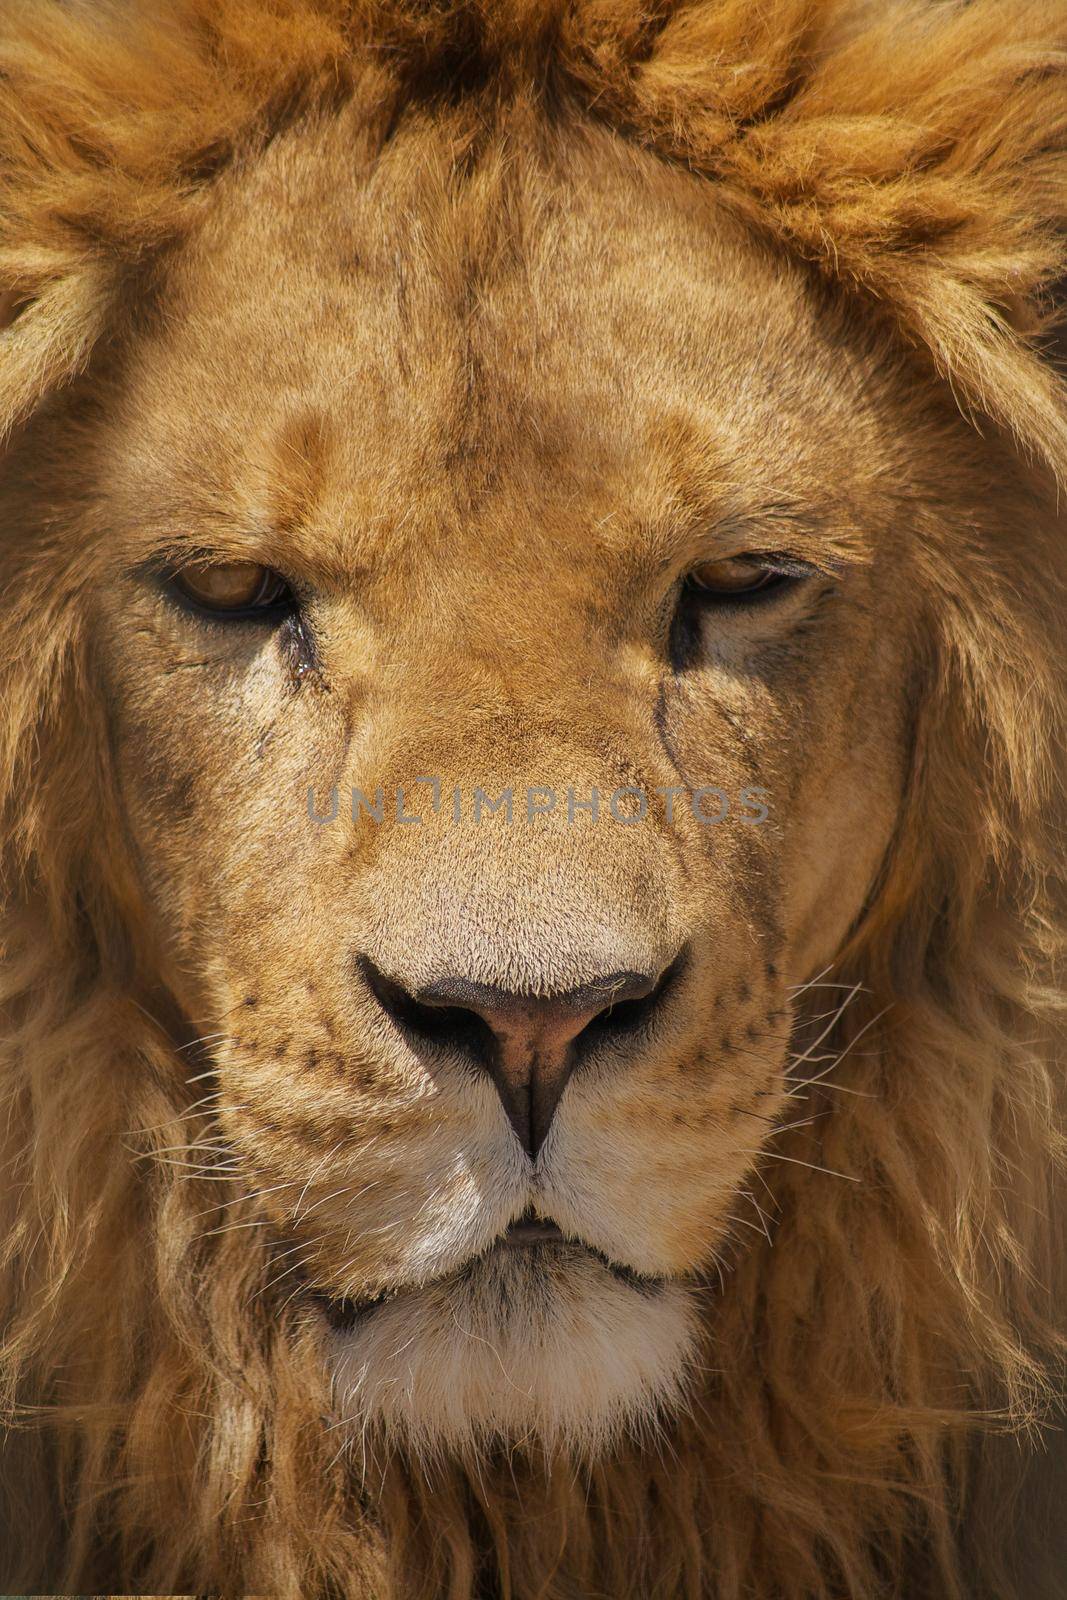 Extreme Close up portrait of a lion.